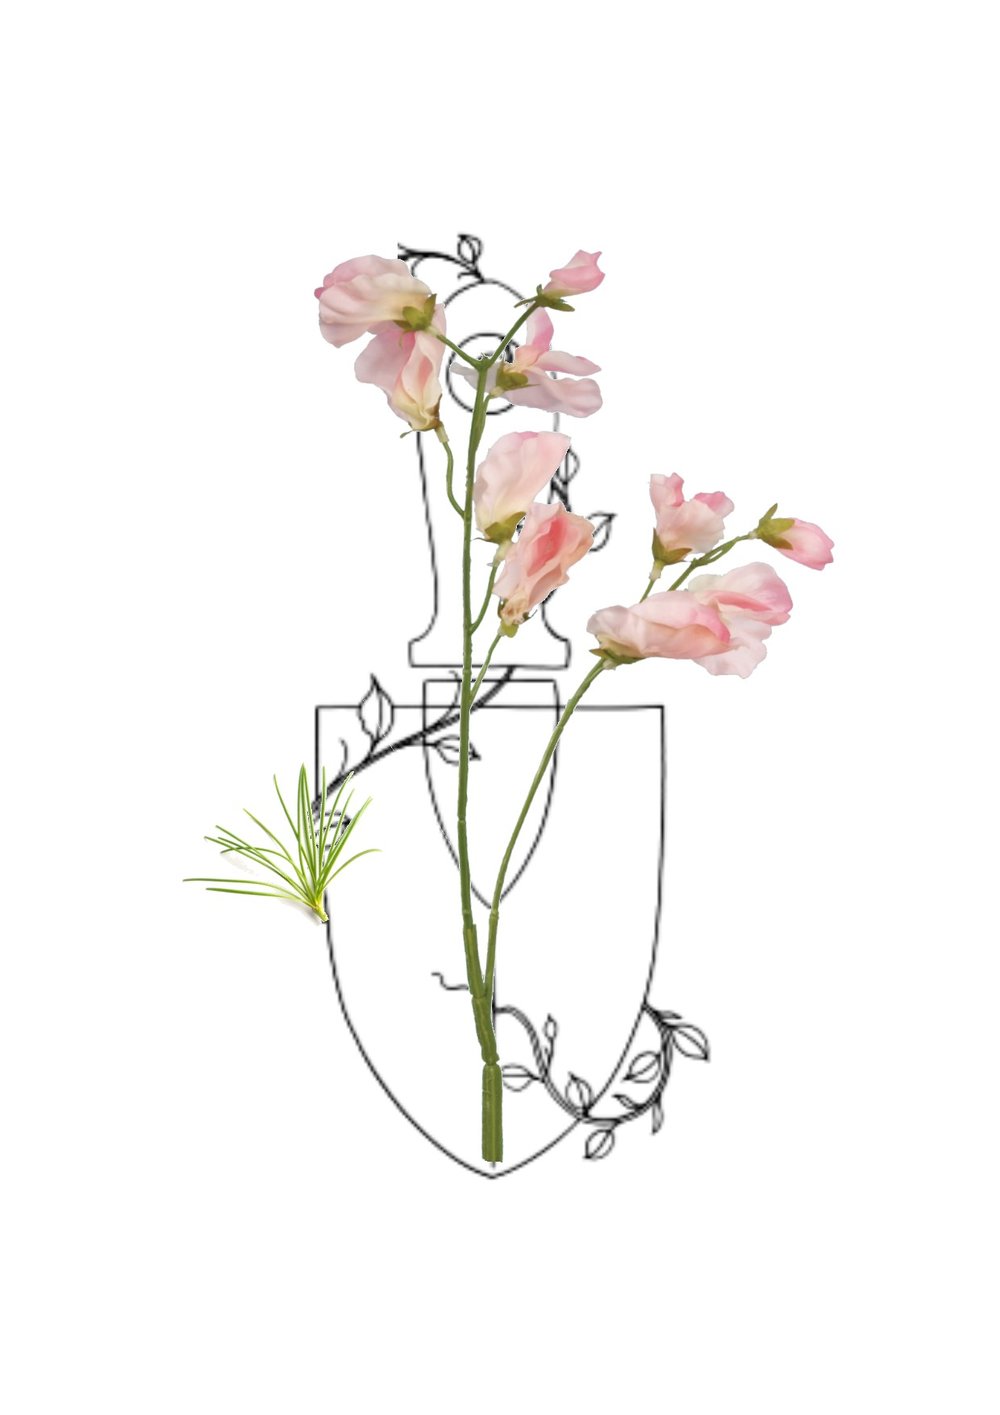 Sweet Pea Flower Drawing at GetDrawings | Free download